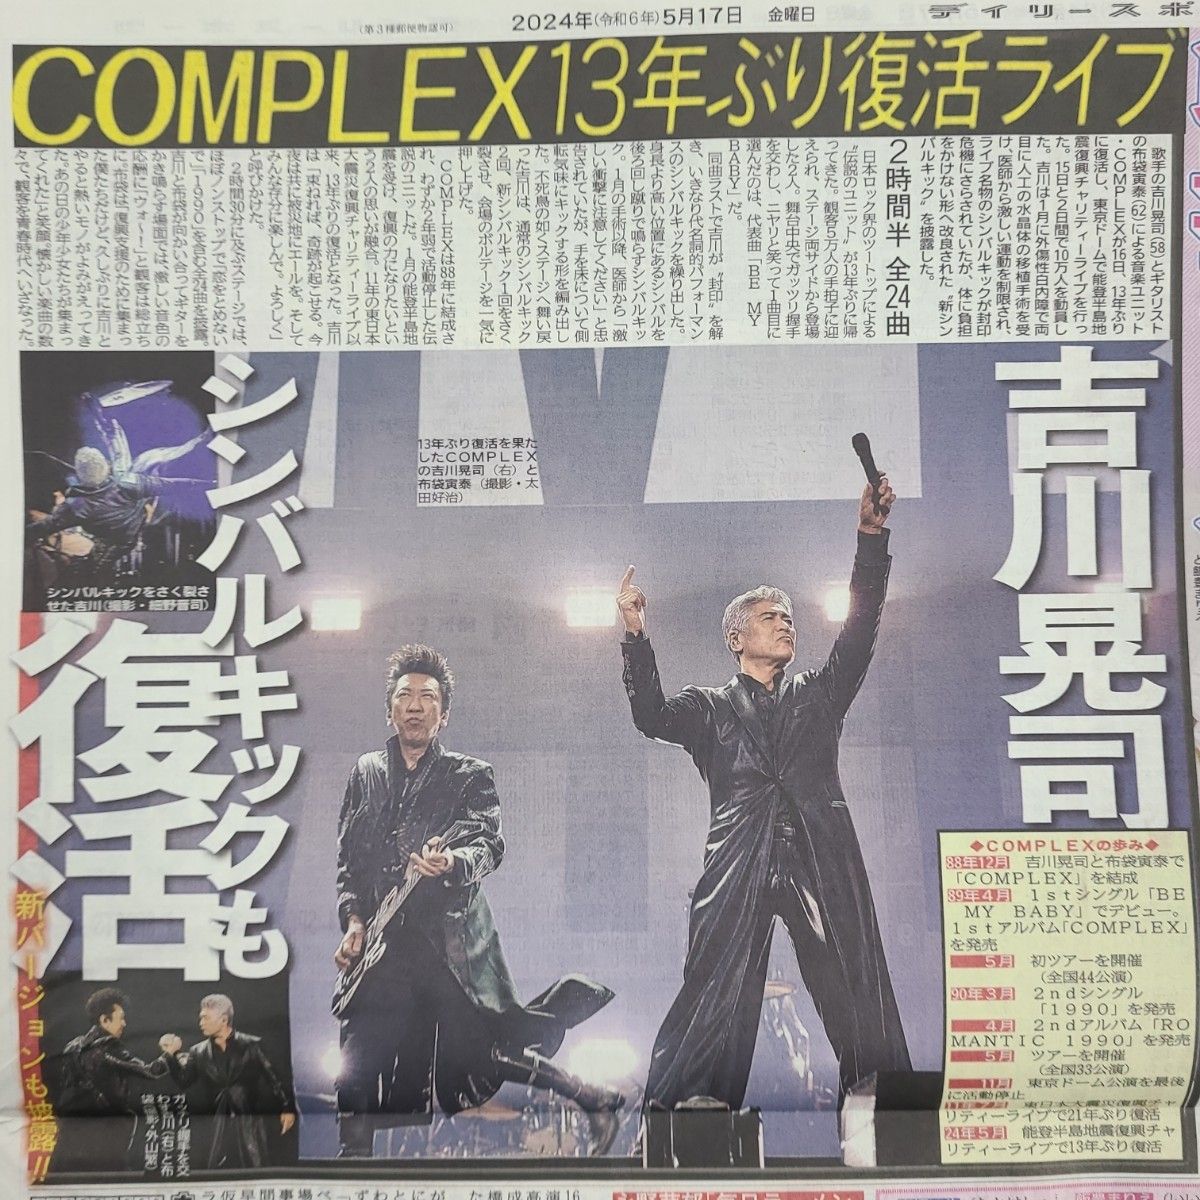 5月17日 朝刊　complex13年ぶり東京ドームライブスポーツ紙全6社